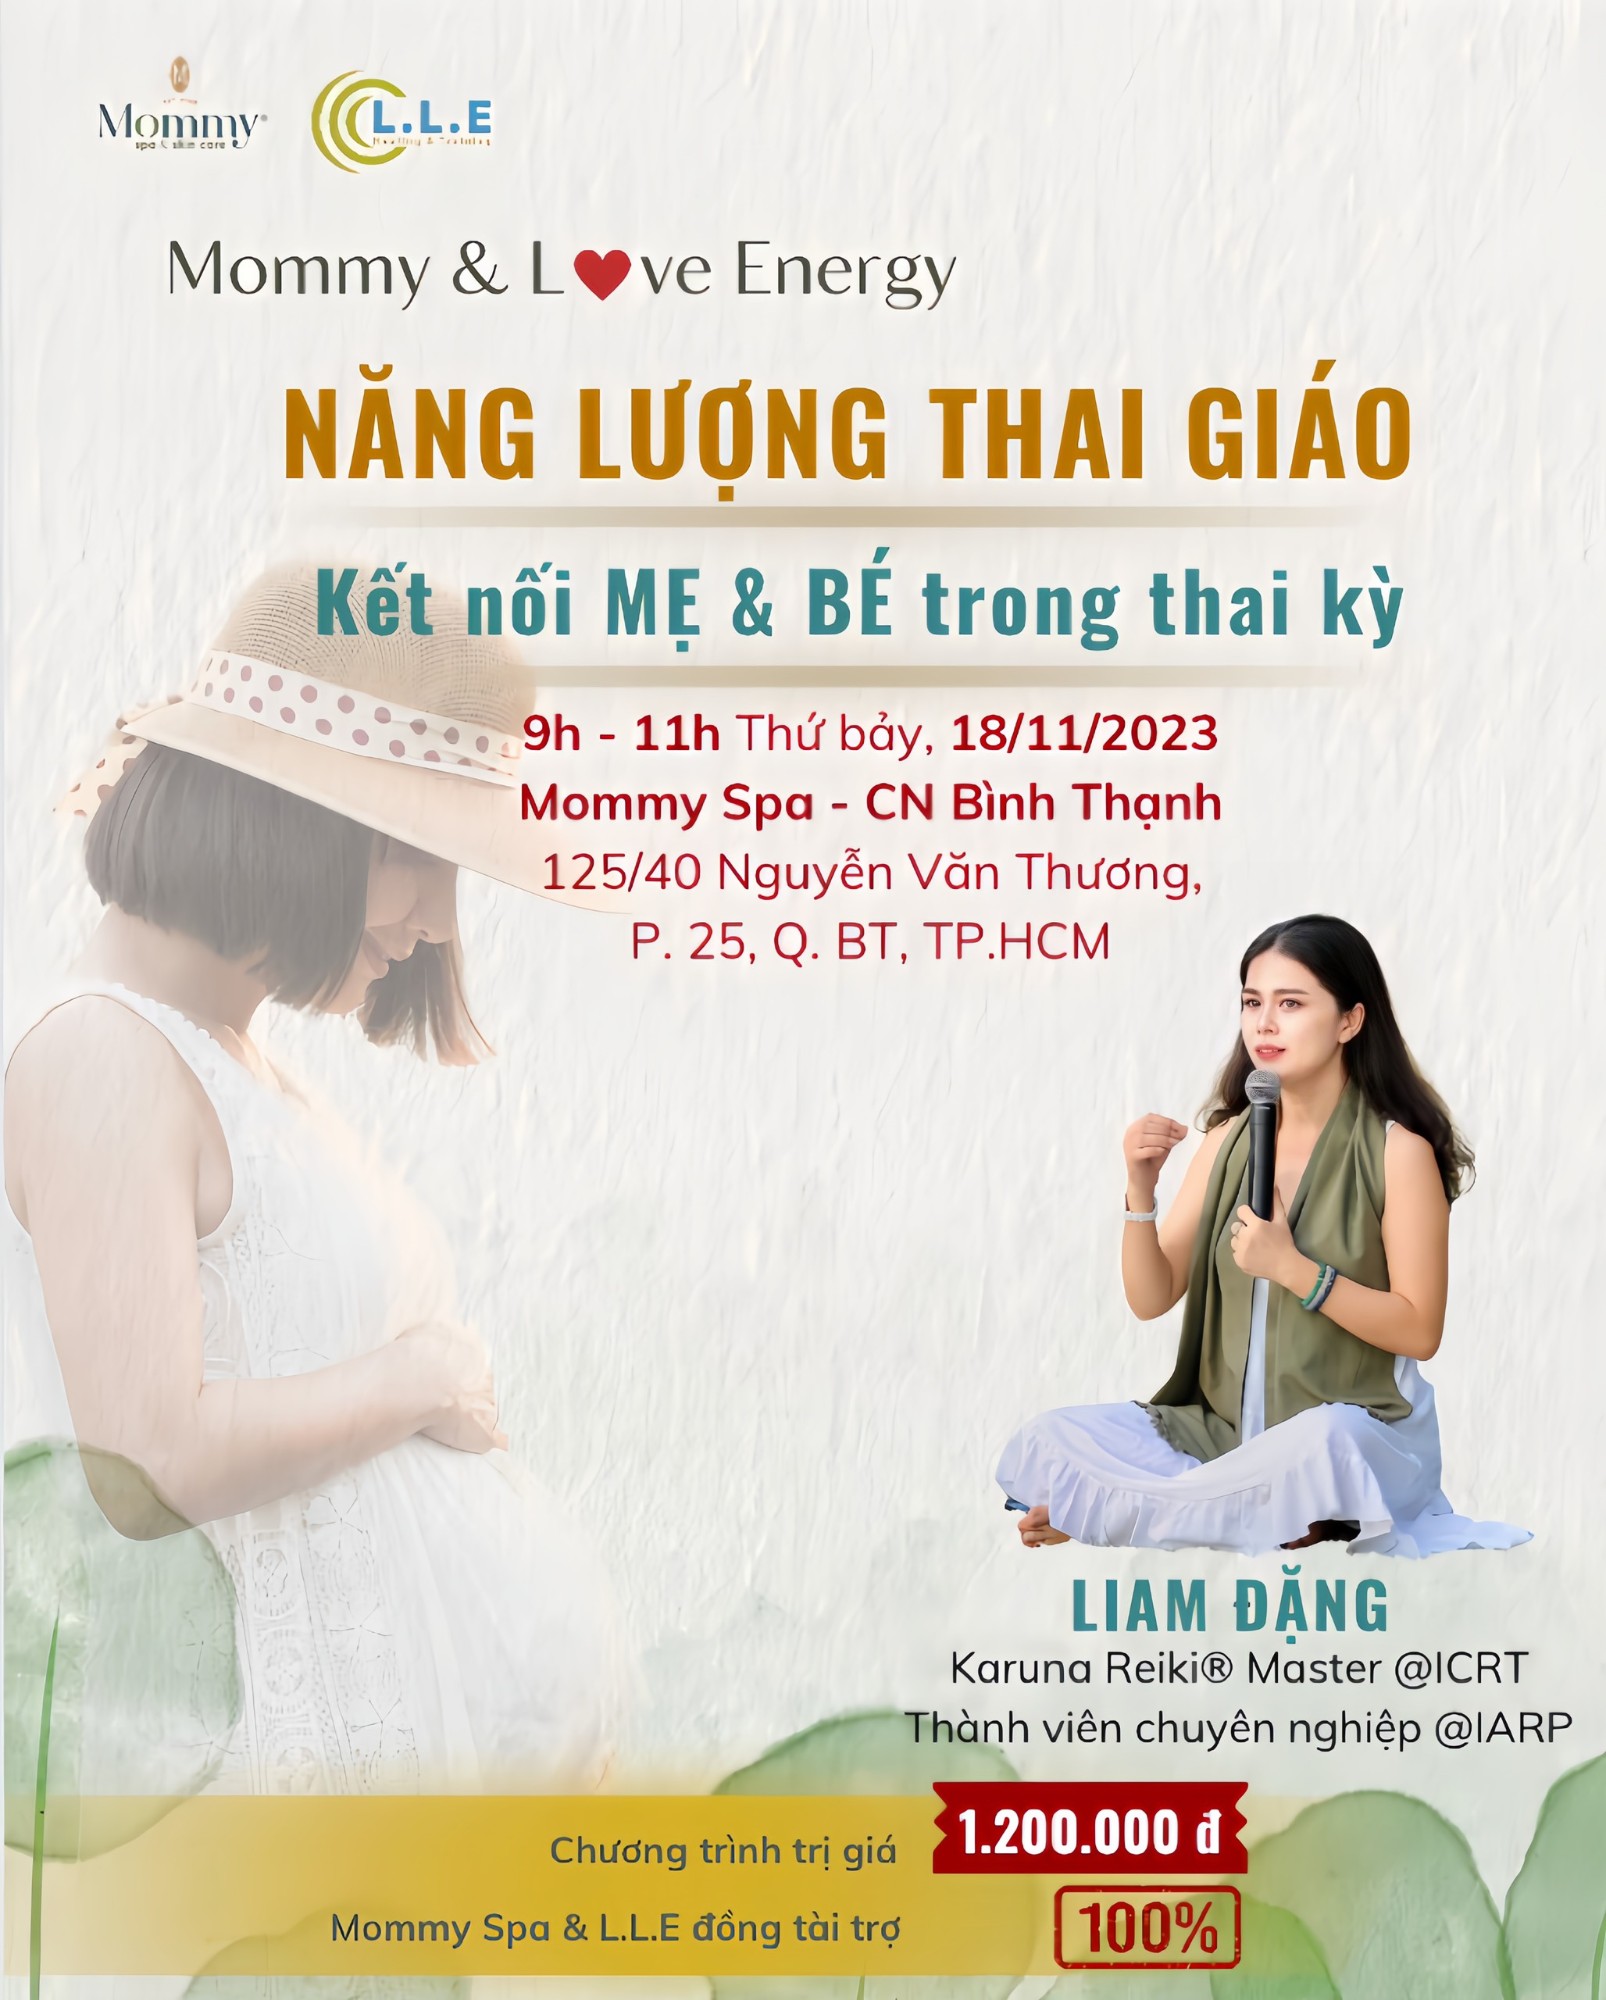 LỚP HỌC: Thai giáo, kết nối năng lượng giữa Mẹ và Bé